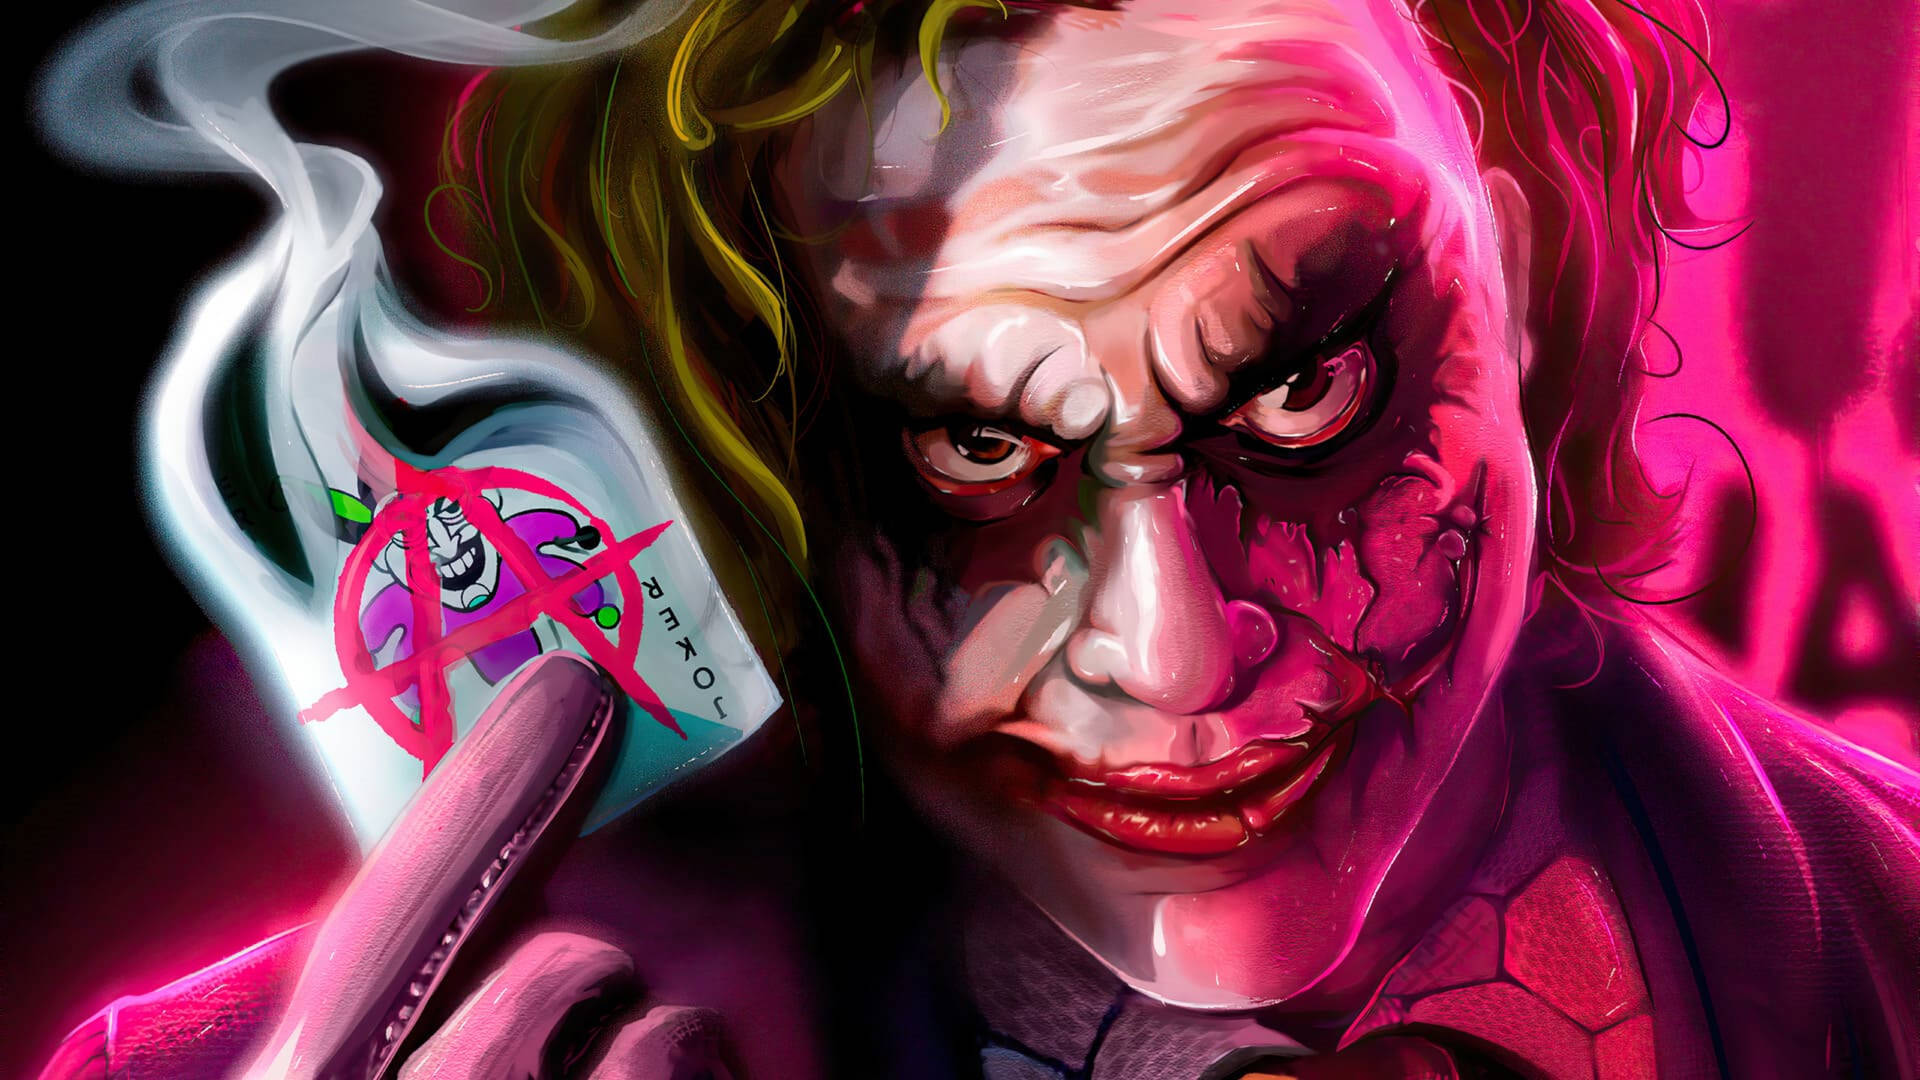 Joker Neon Pink Aesthetic Wallpaper